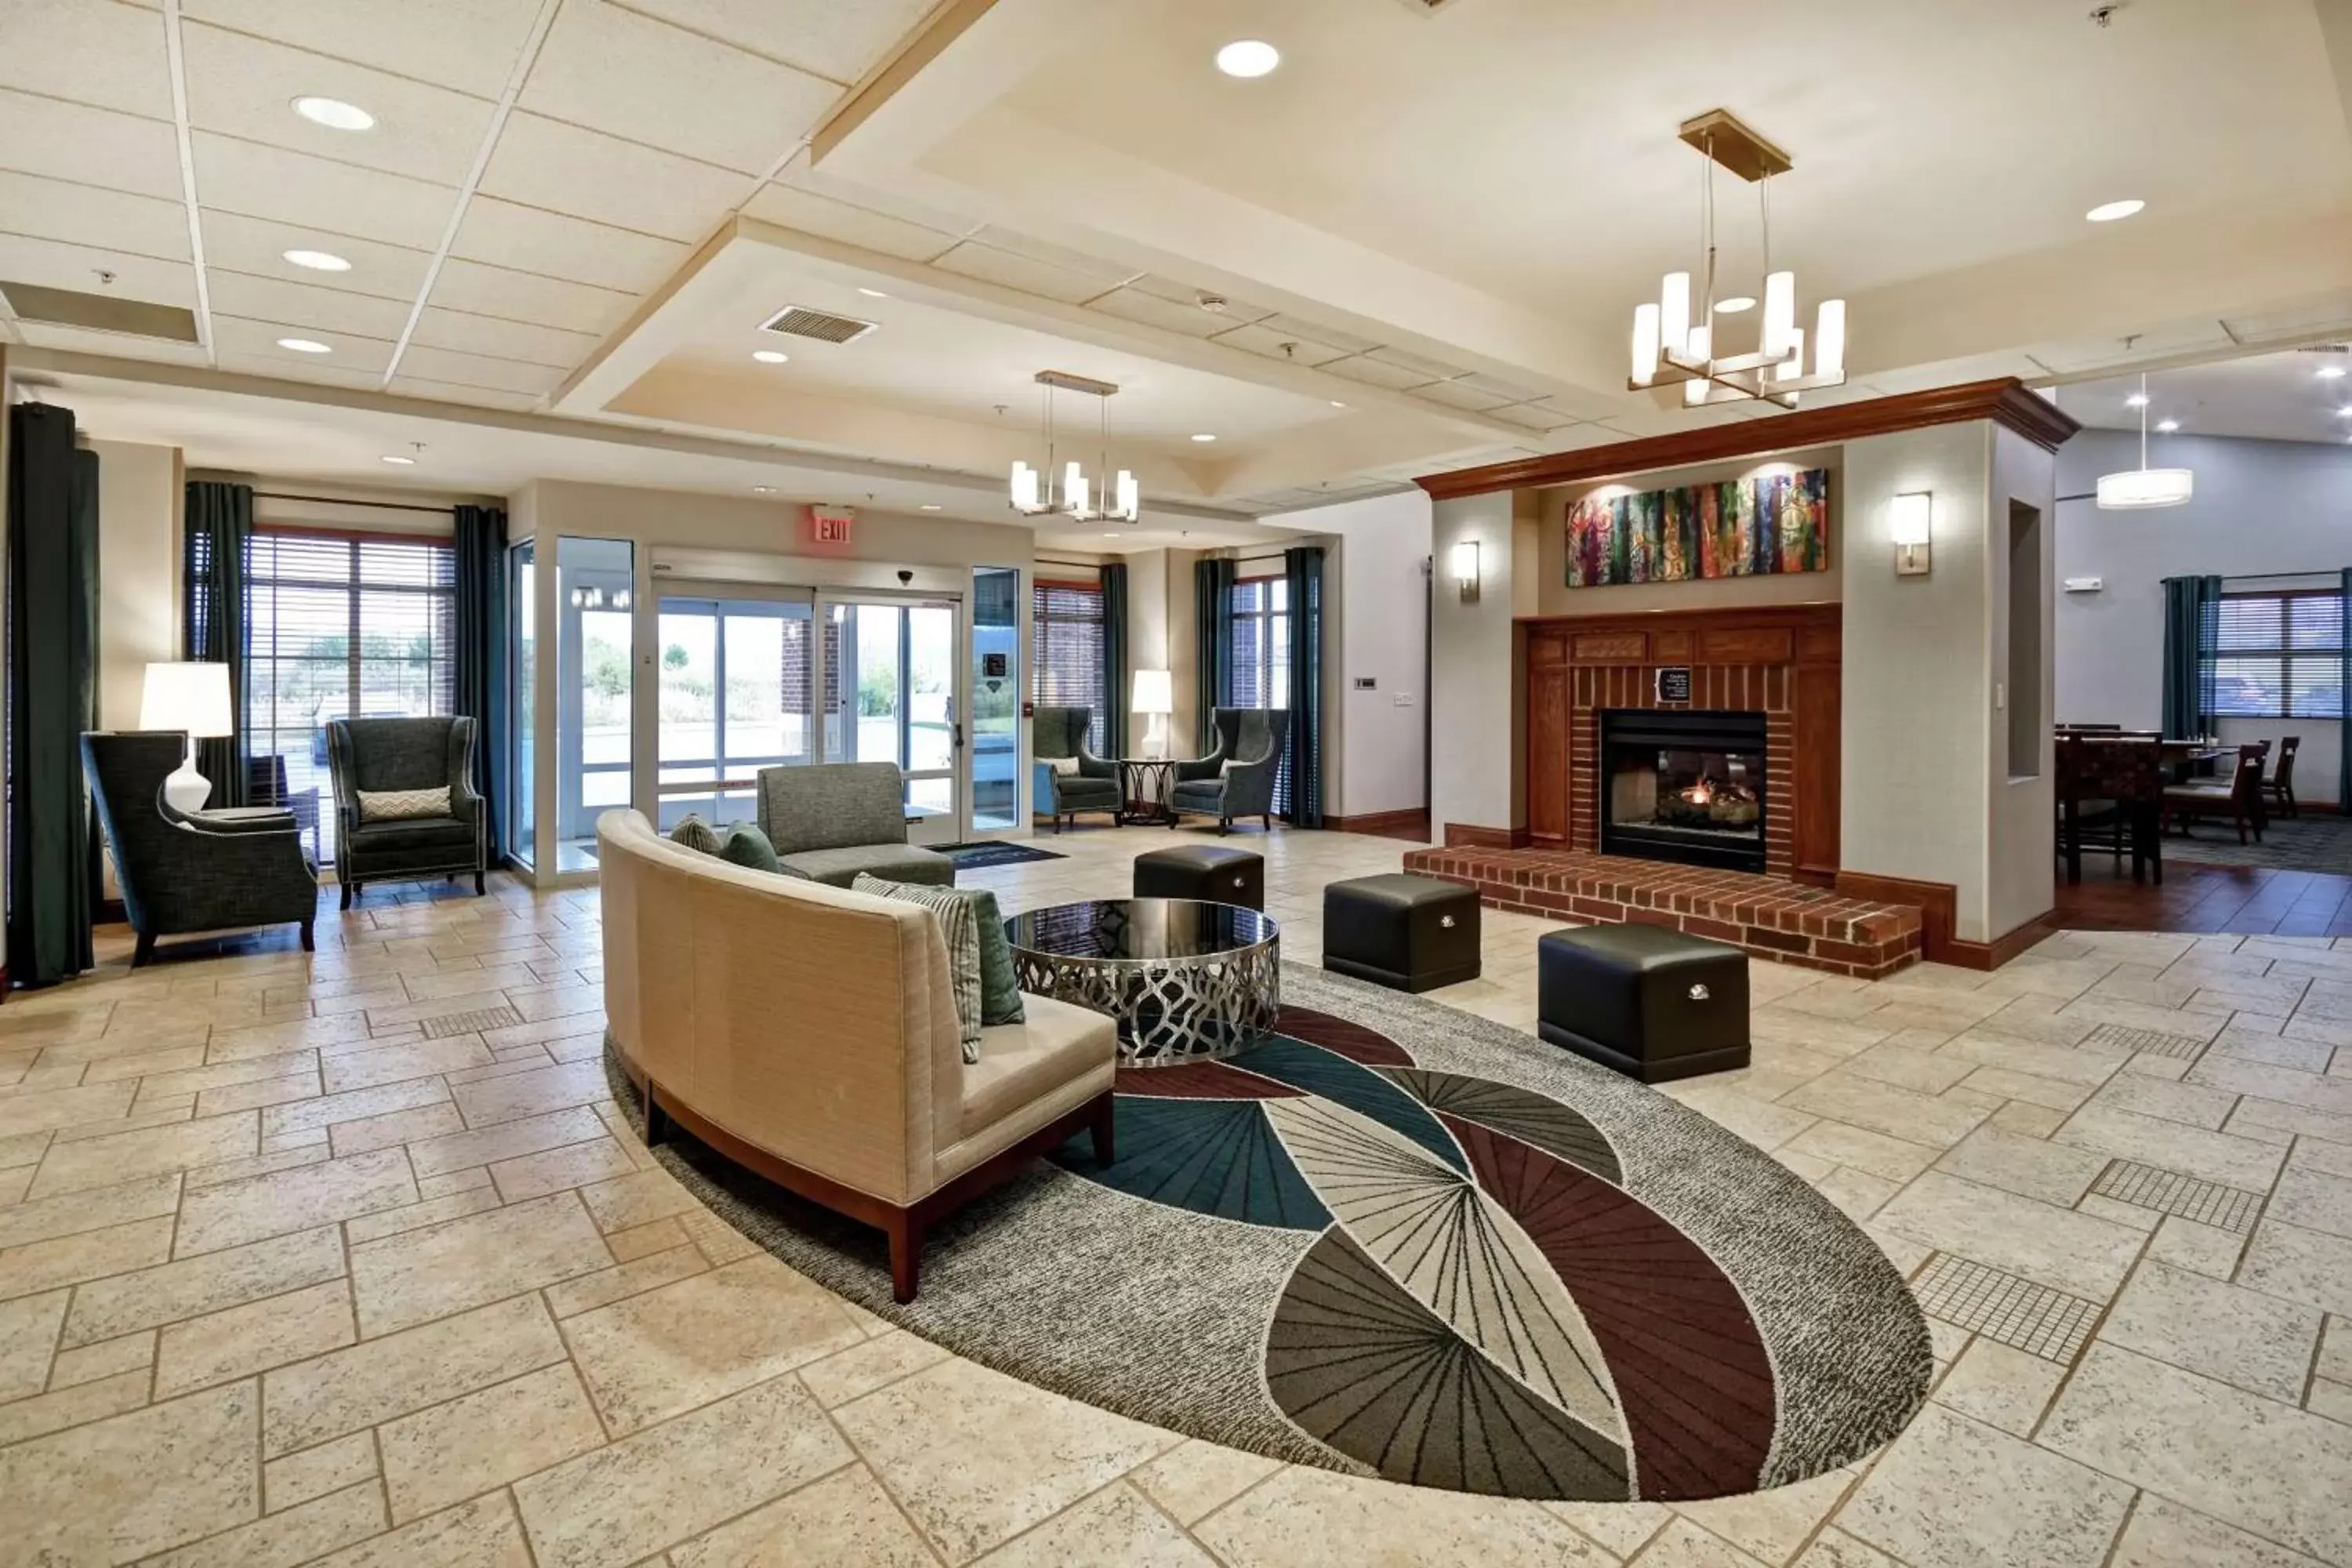 Lobby or reception, Lobby/Reception in Homewood Suites by Hilton Cincinnati-Milford